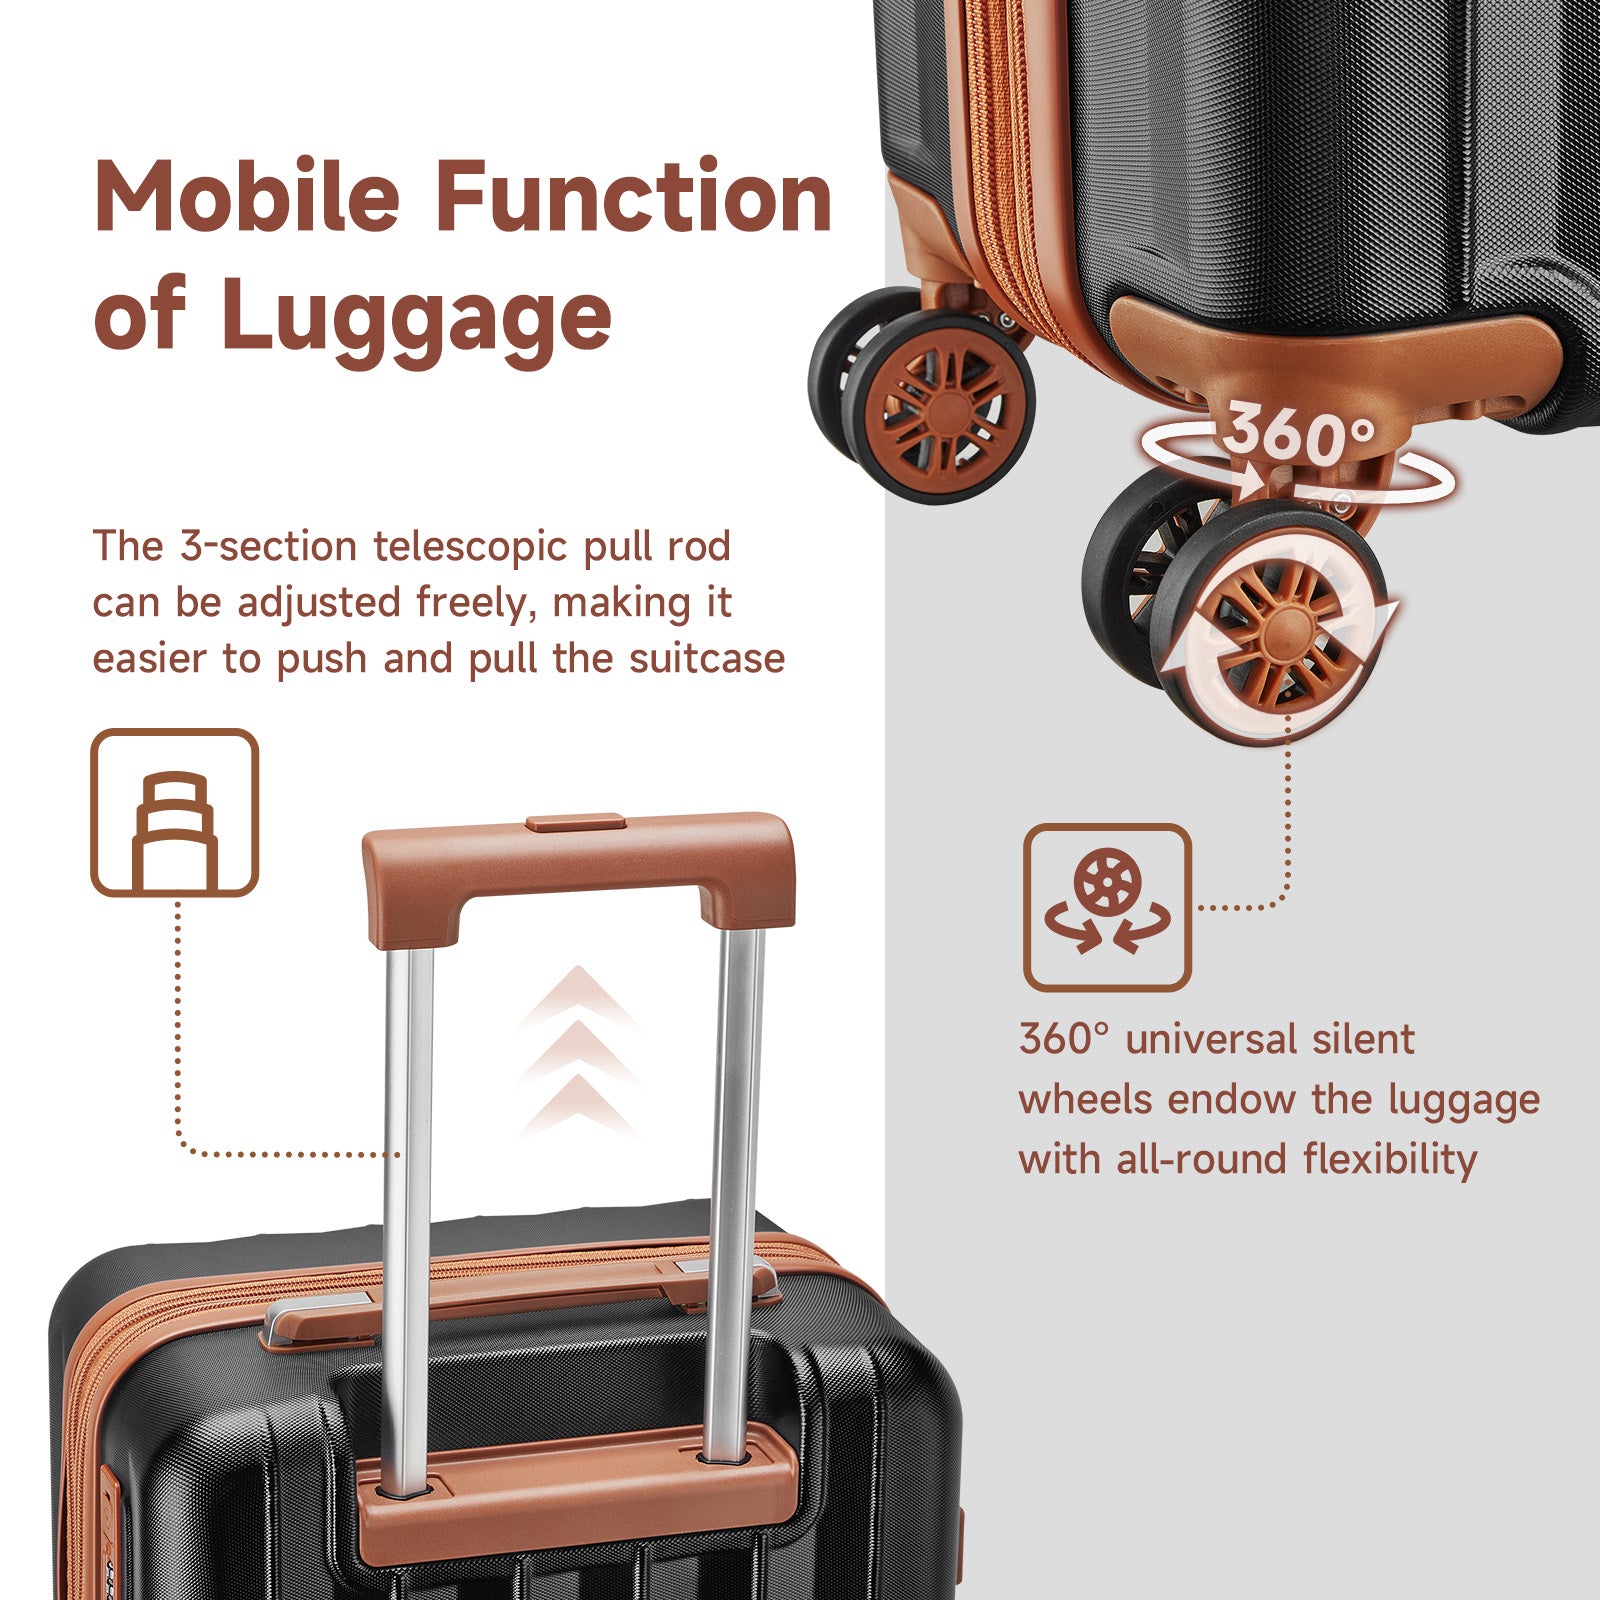 Joyway - Best Luggage - 3 Pieces Set Hardside Carry On Luggage Set – joyway